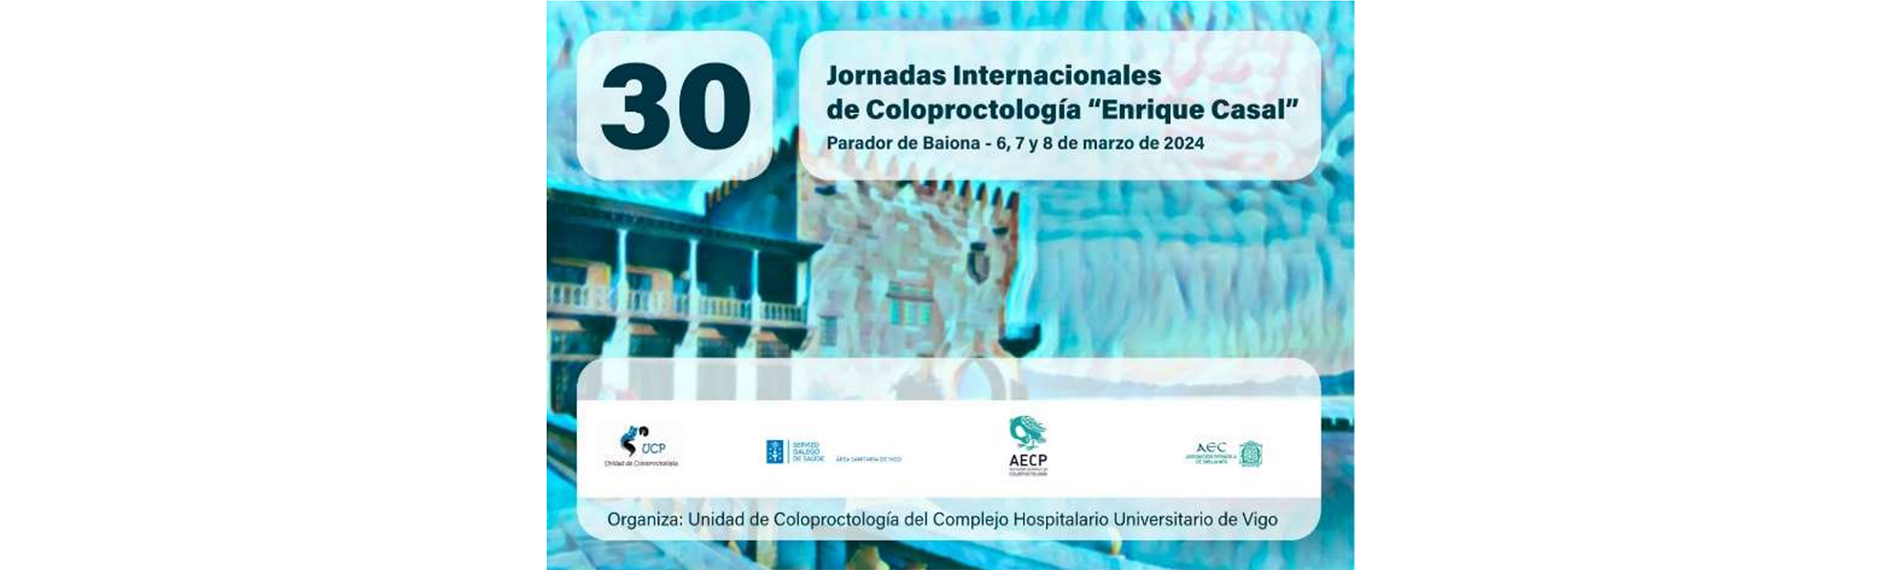 Jornadas Internacionales de Coloproctología Enrique Casal, 6-8 marzo 2024, Baiona